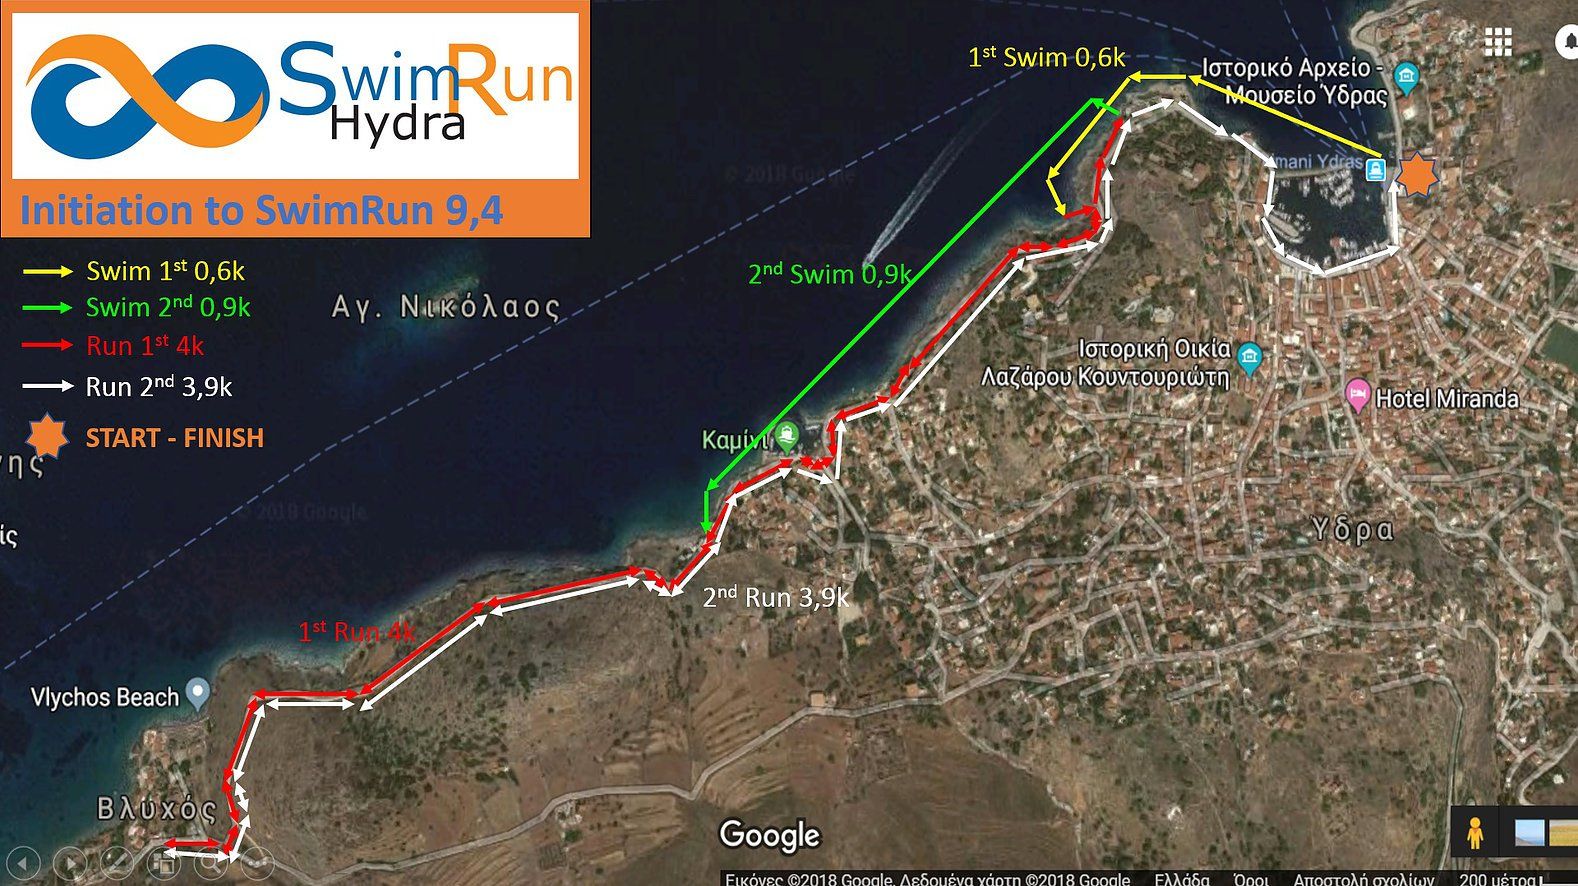 Swim Run Hydra - Annual events on Hydra Island Greece.